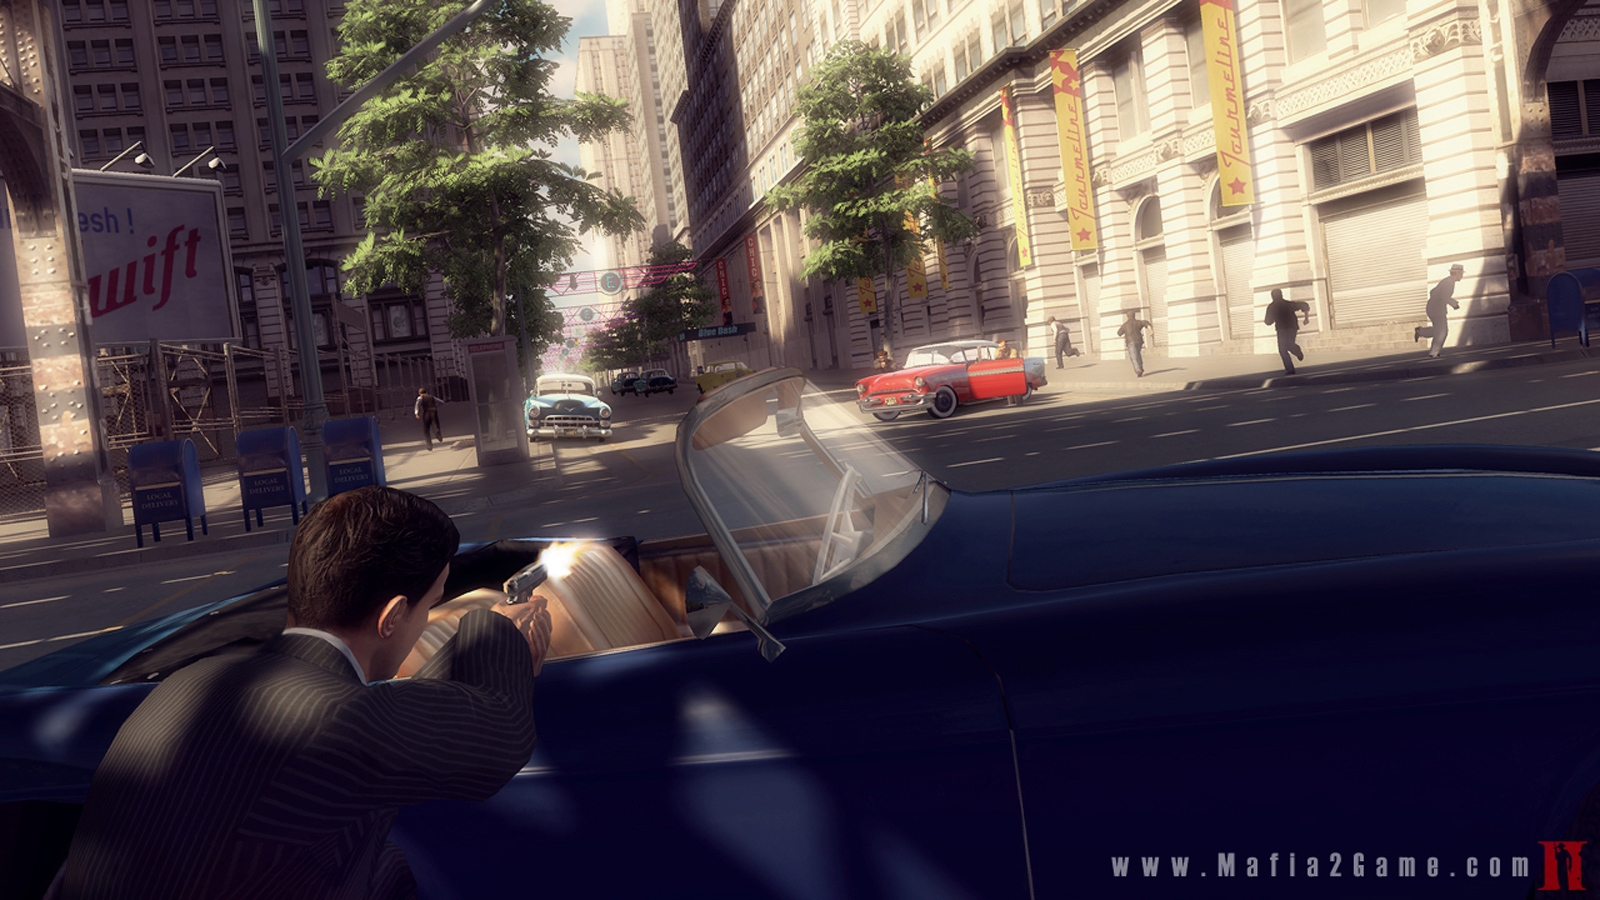 Скриншот из игры Mafia 2 под номером 15